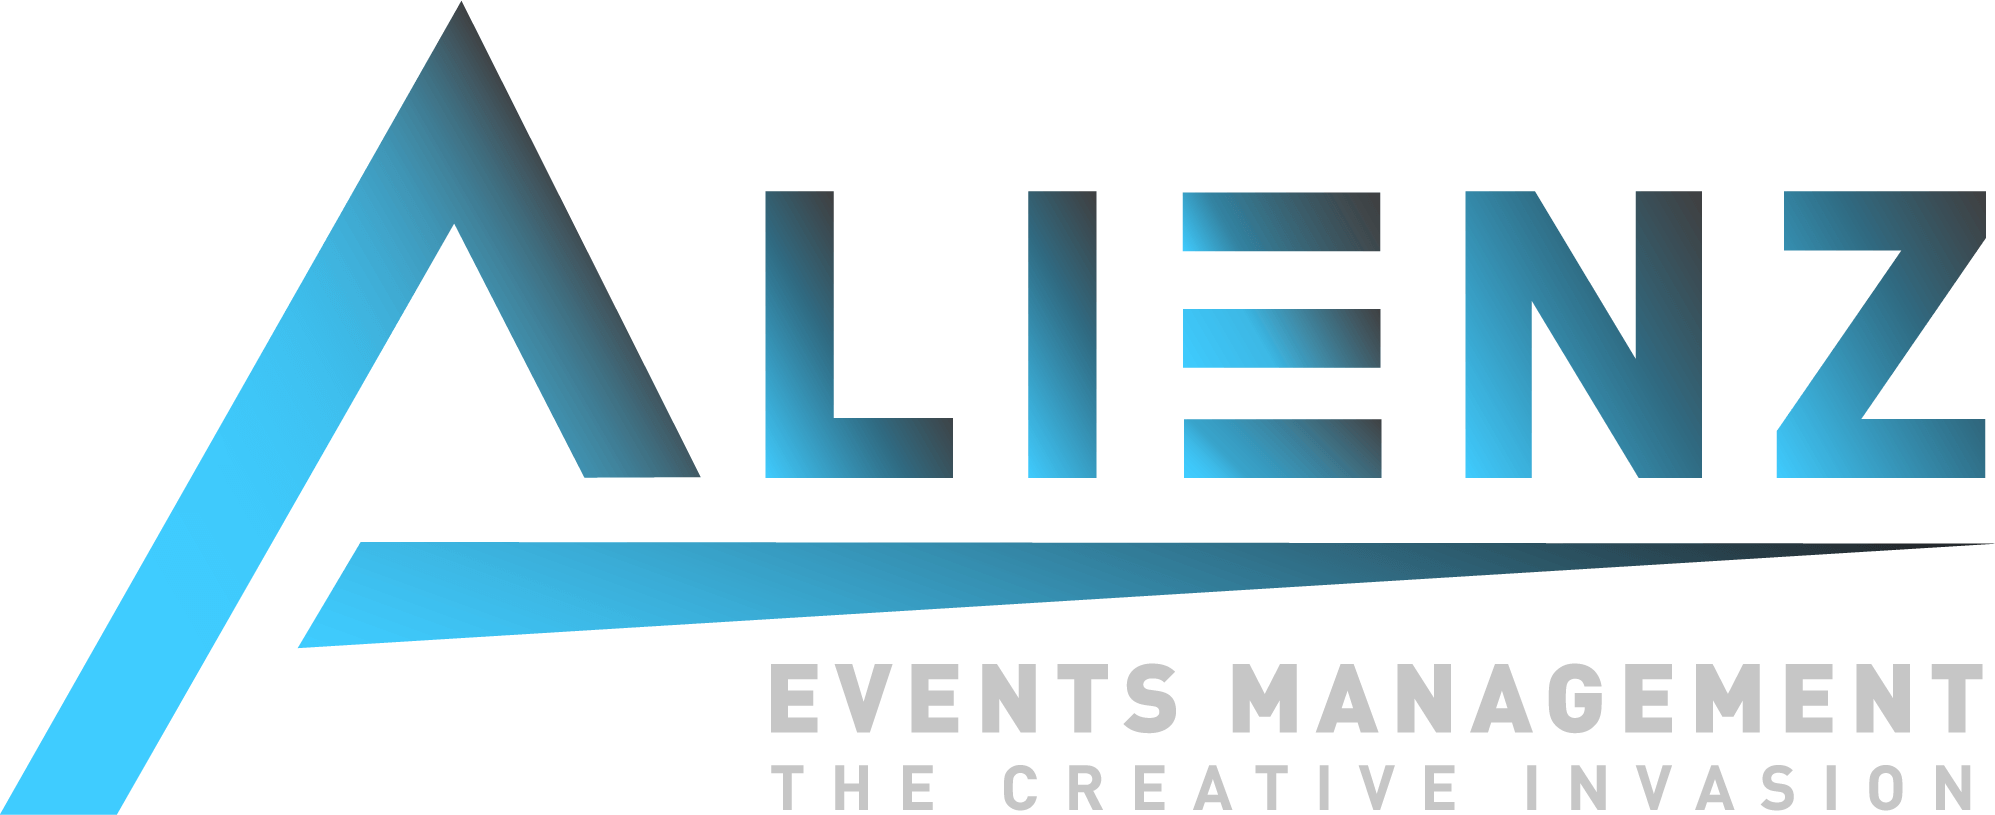 Alienz Events Management